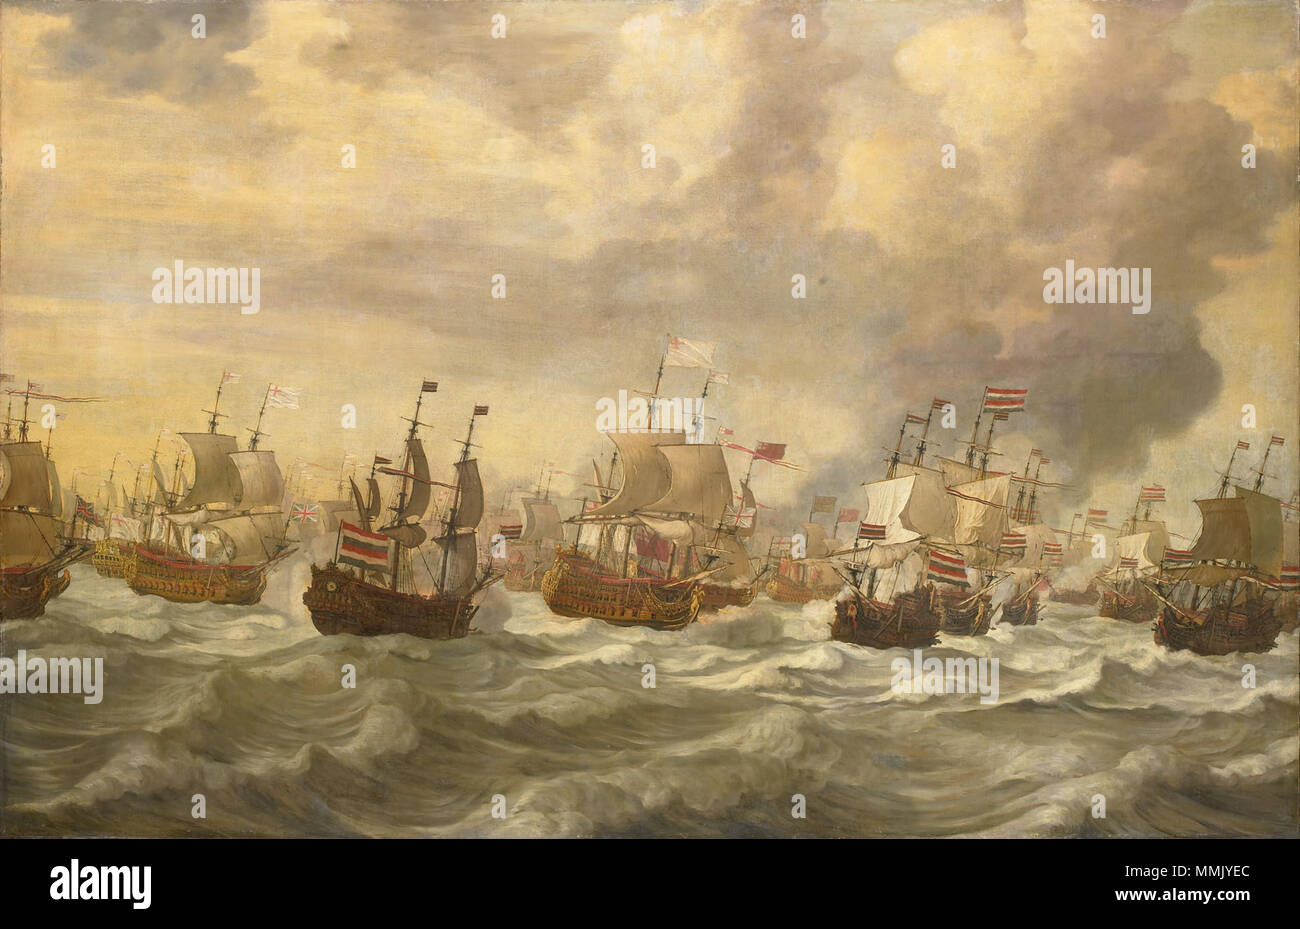 Episodio de la batalla de cuatro días en el mar, 11-14 de junio de 1666, en la segunda Guerra Anglo-holandesa (1665-67). Entre 1666 y 1693. Cuatro días de Batalla - Episodio uit de vierdaagse zeeslag (Willem van de Velde I, 1693) Foto de stock